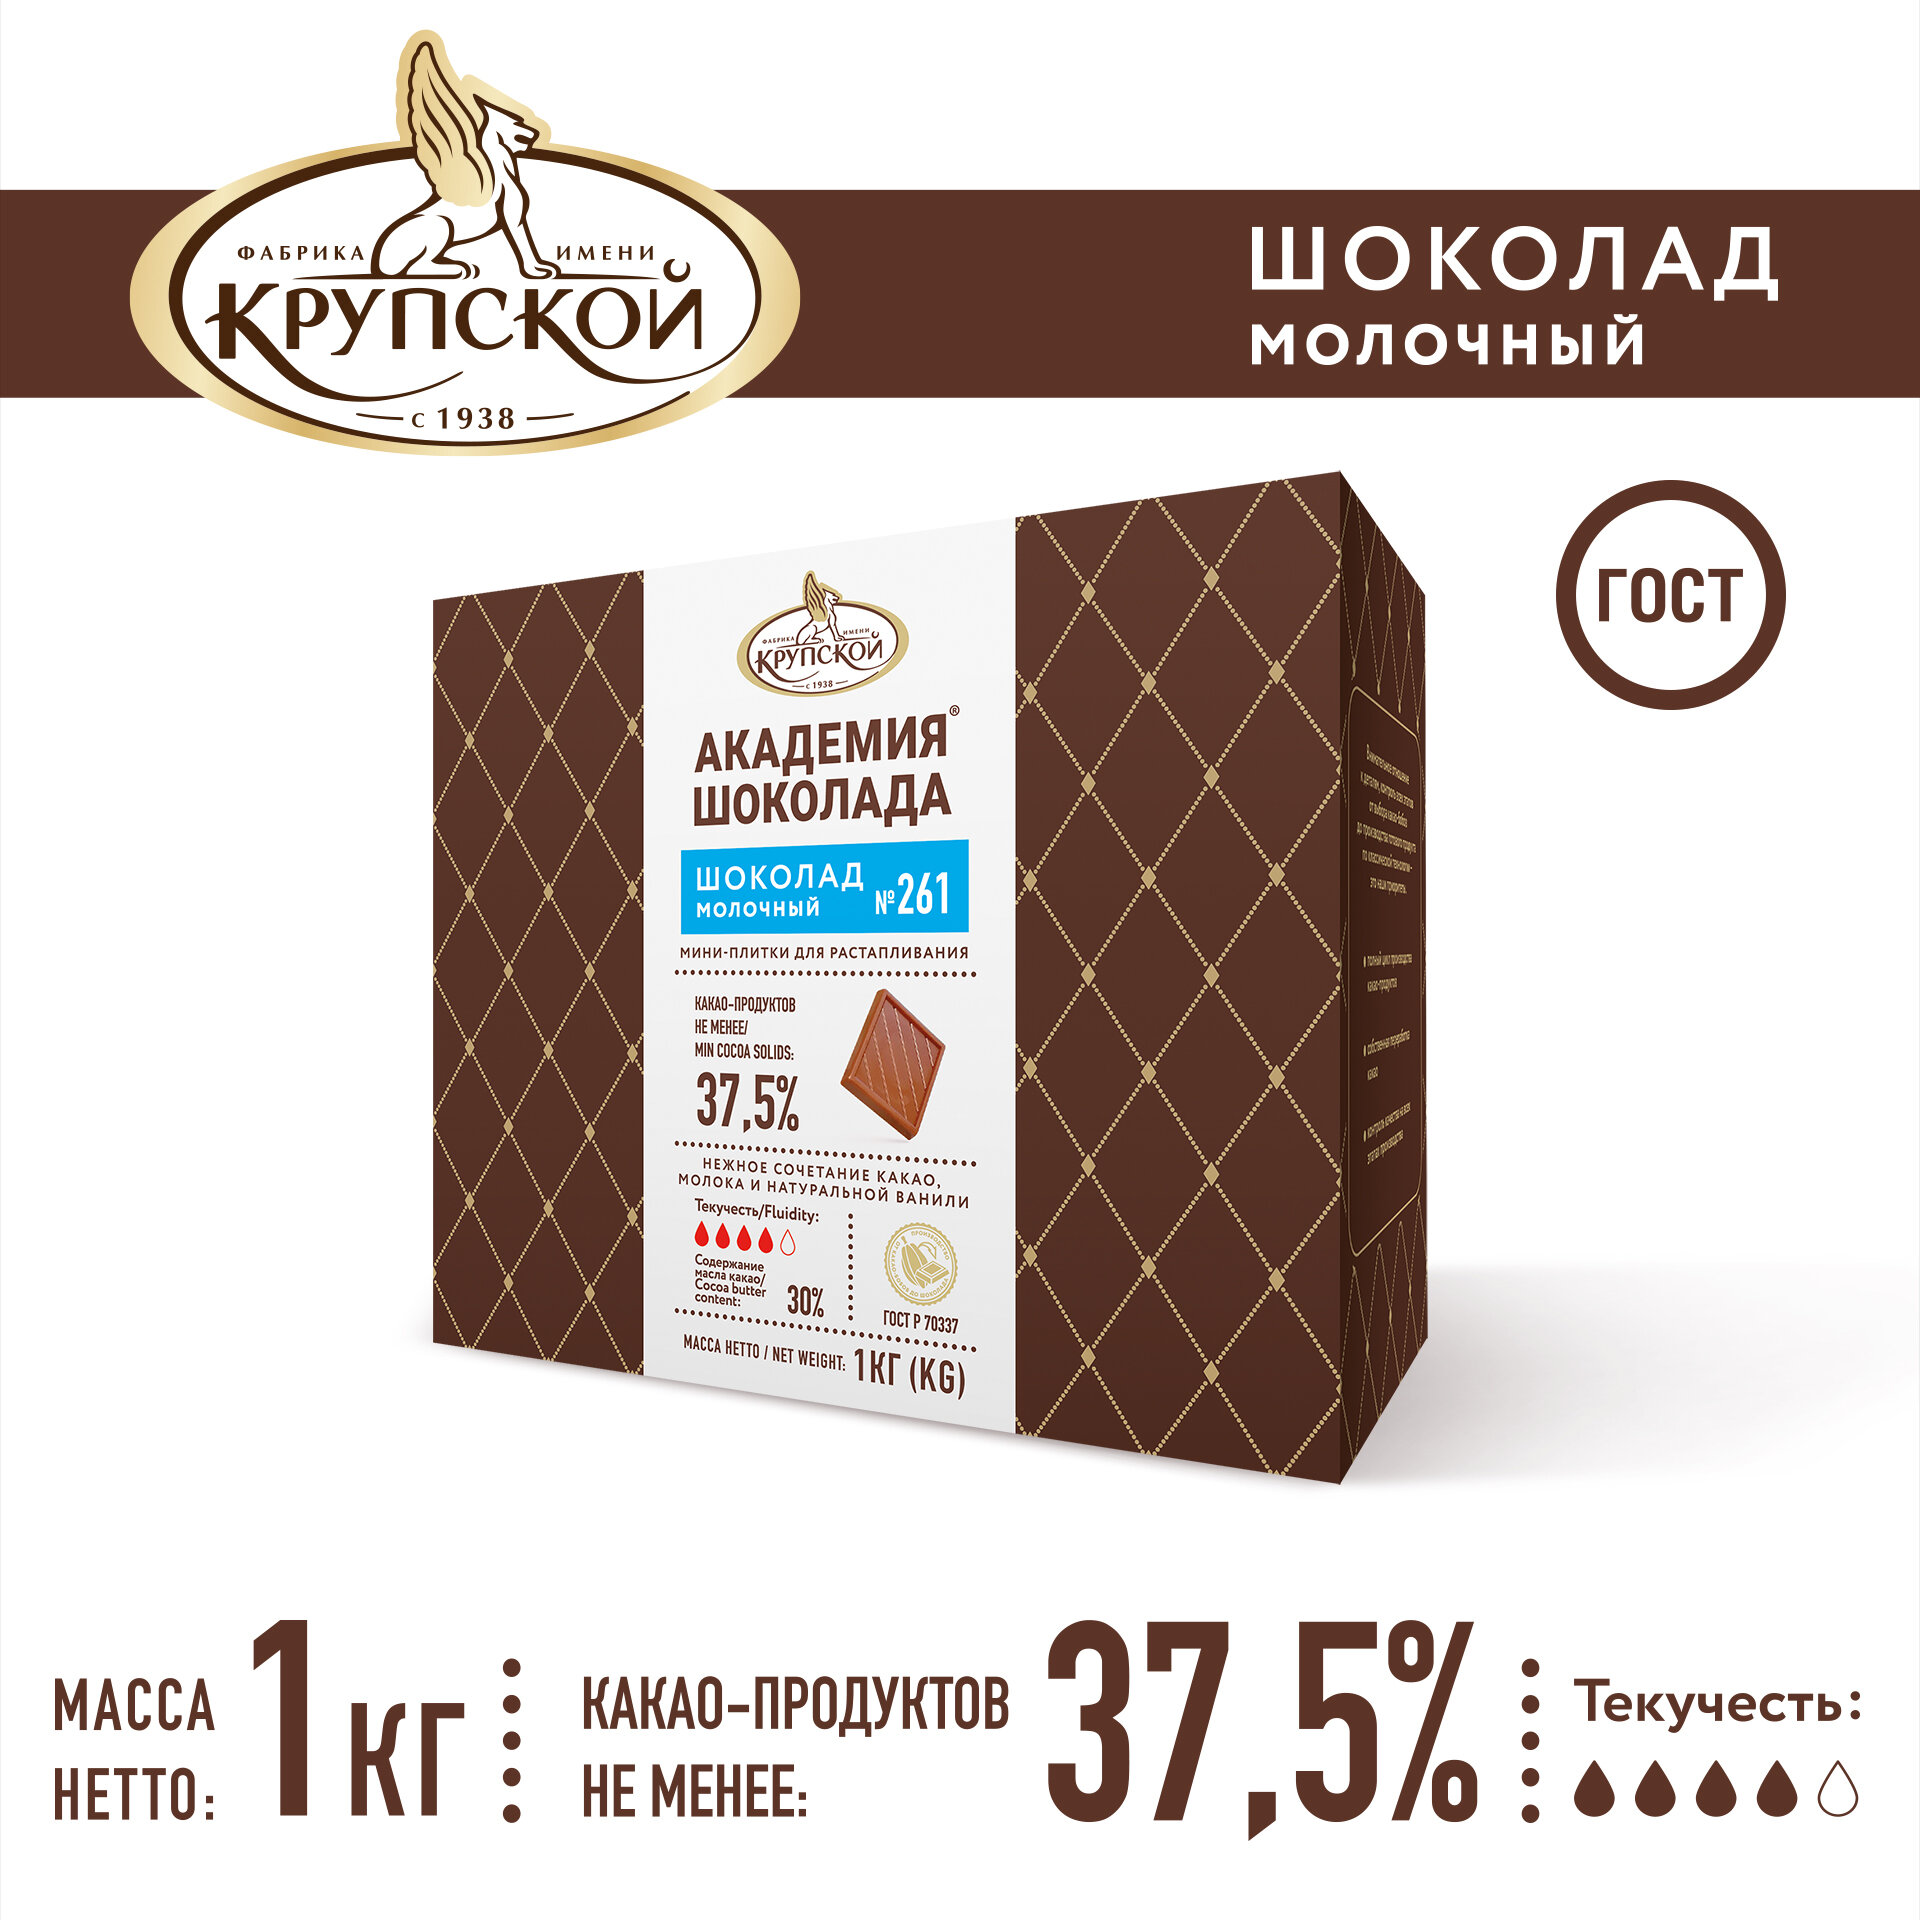 Шоколад кондитерский для глазури молочный Академия шоколада № 261, 37% какао ТМ Фабрика им. Крупской 1 кг - фотография № 1